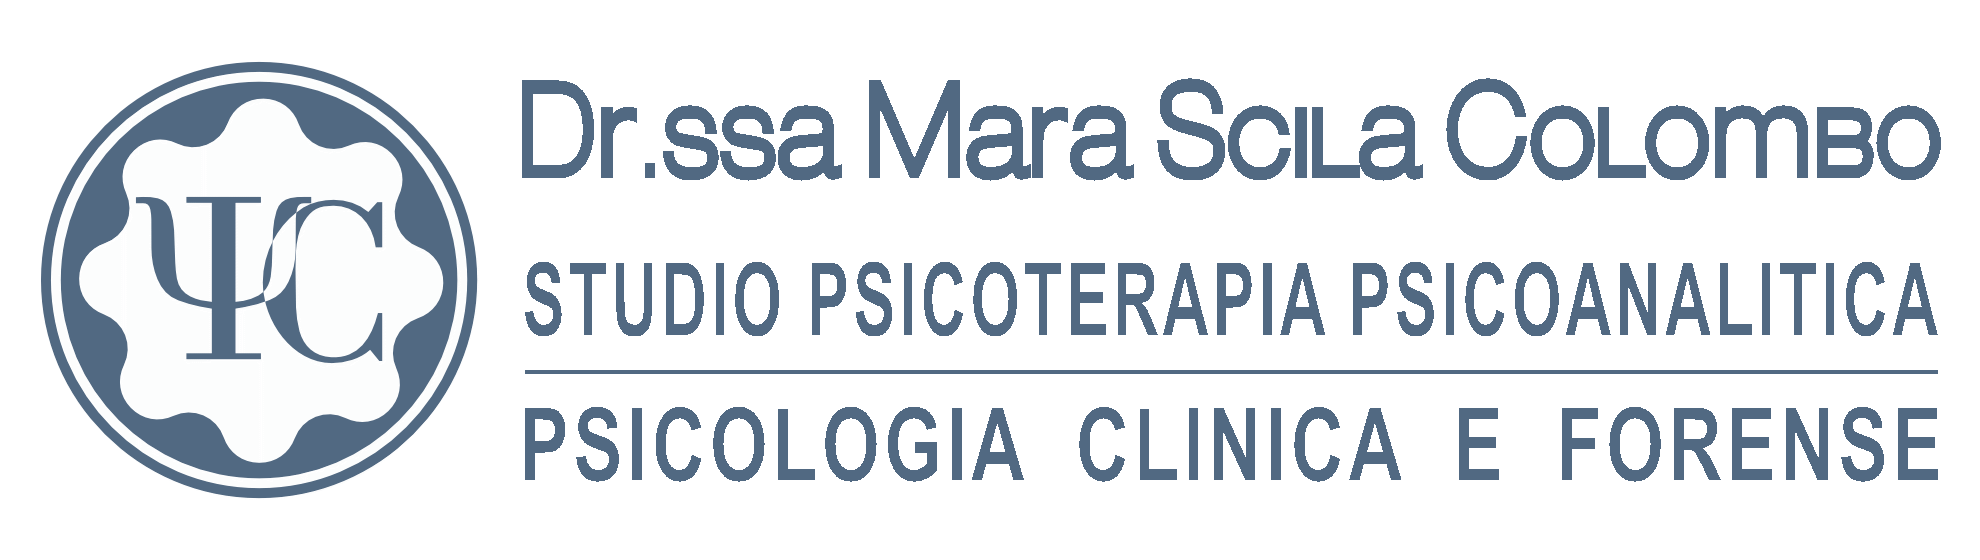 Psicologia e Psicoterapia dr. Mara Scila Colombo 